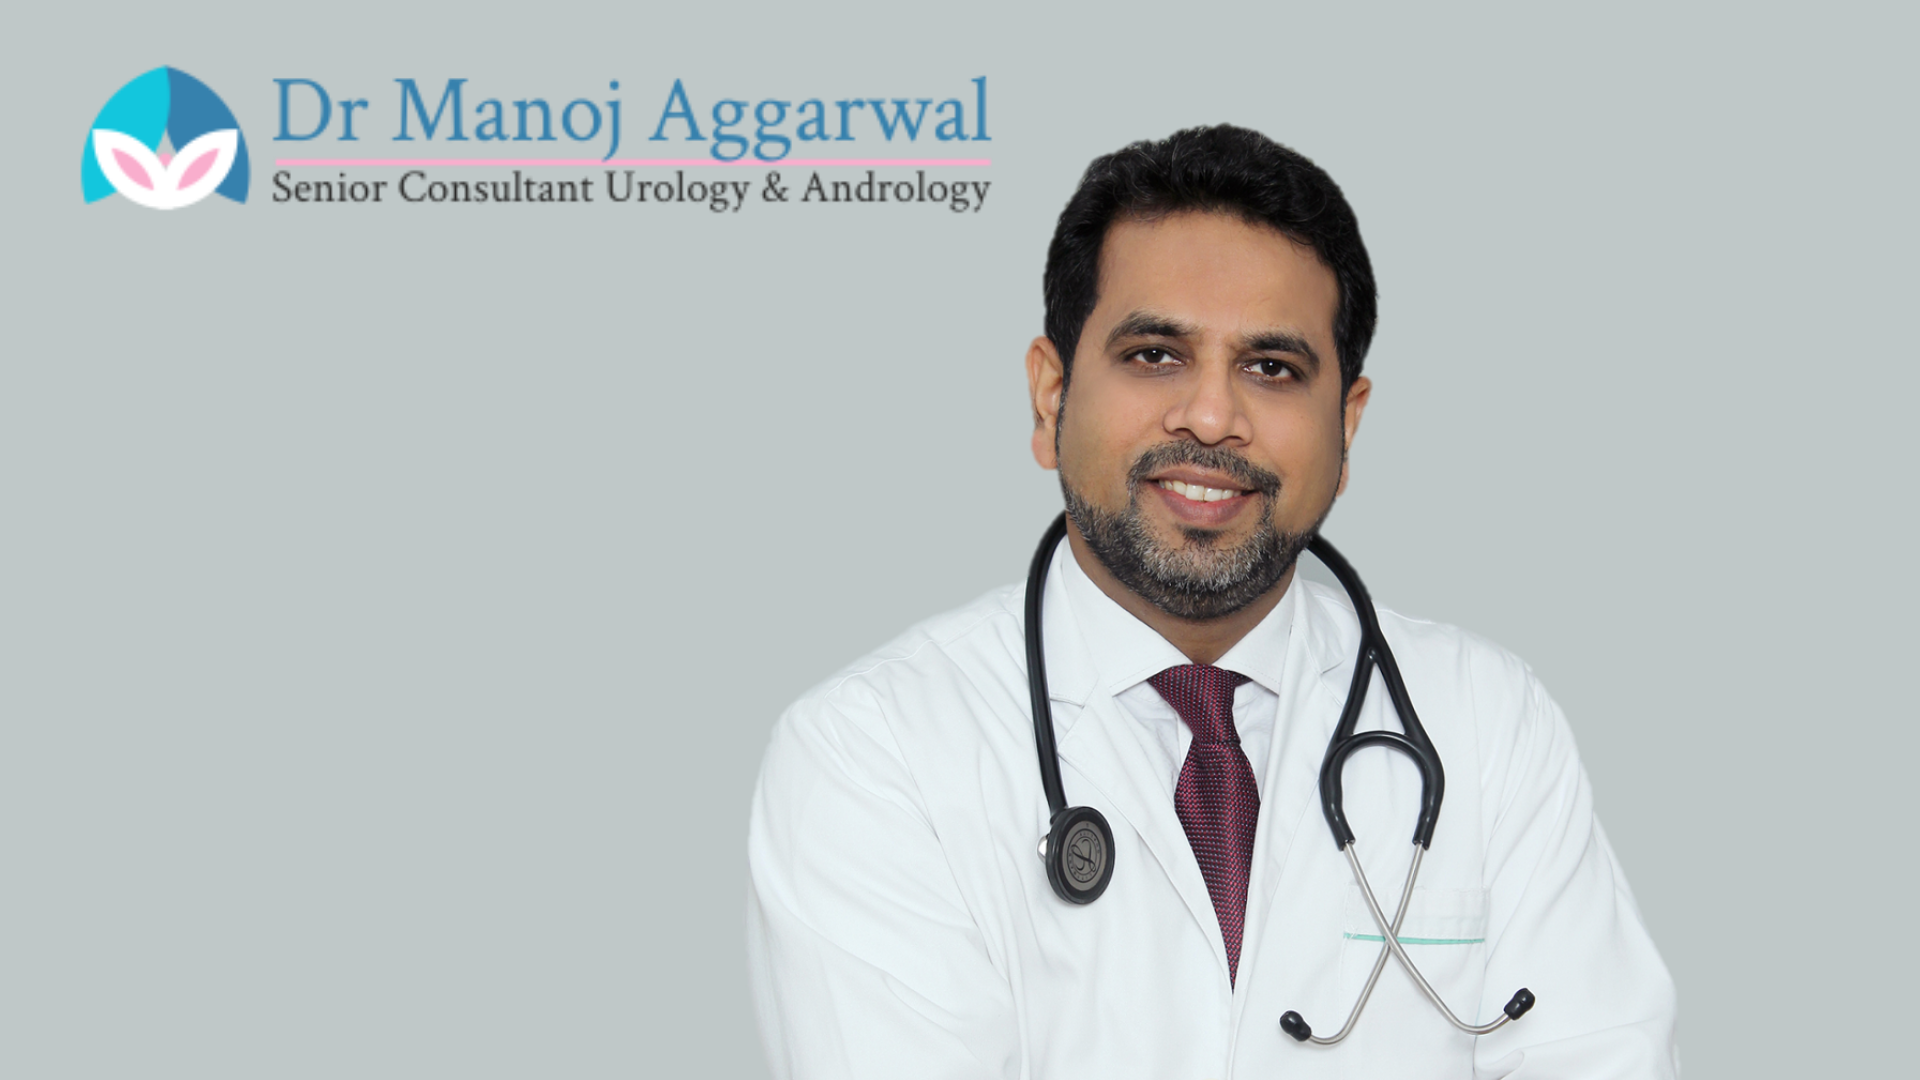 Best Urologist in Delhi/NCR - Dr. Manoj Aggarwal